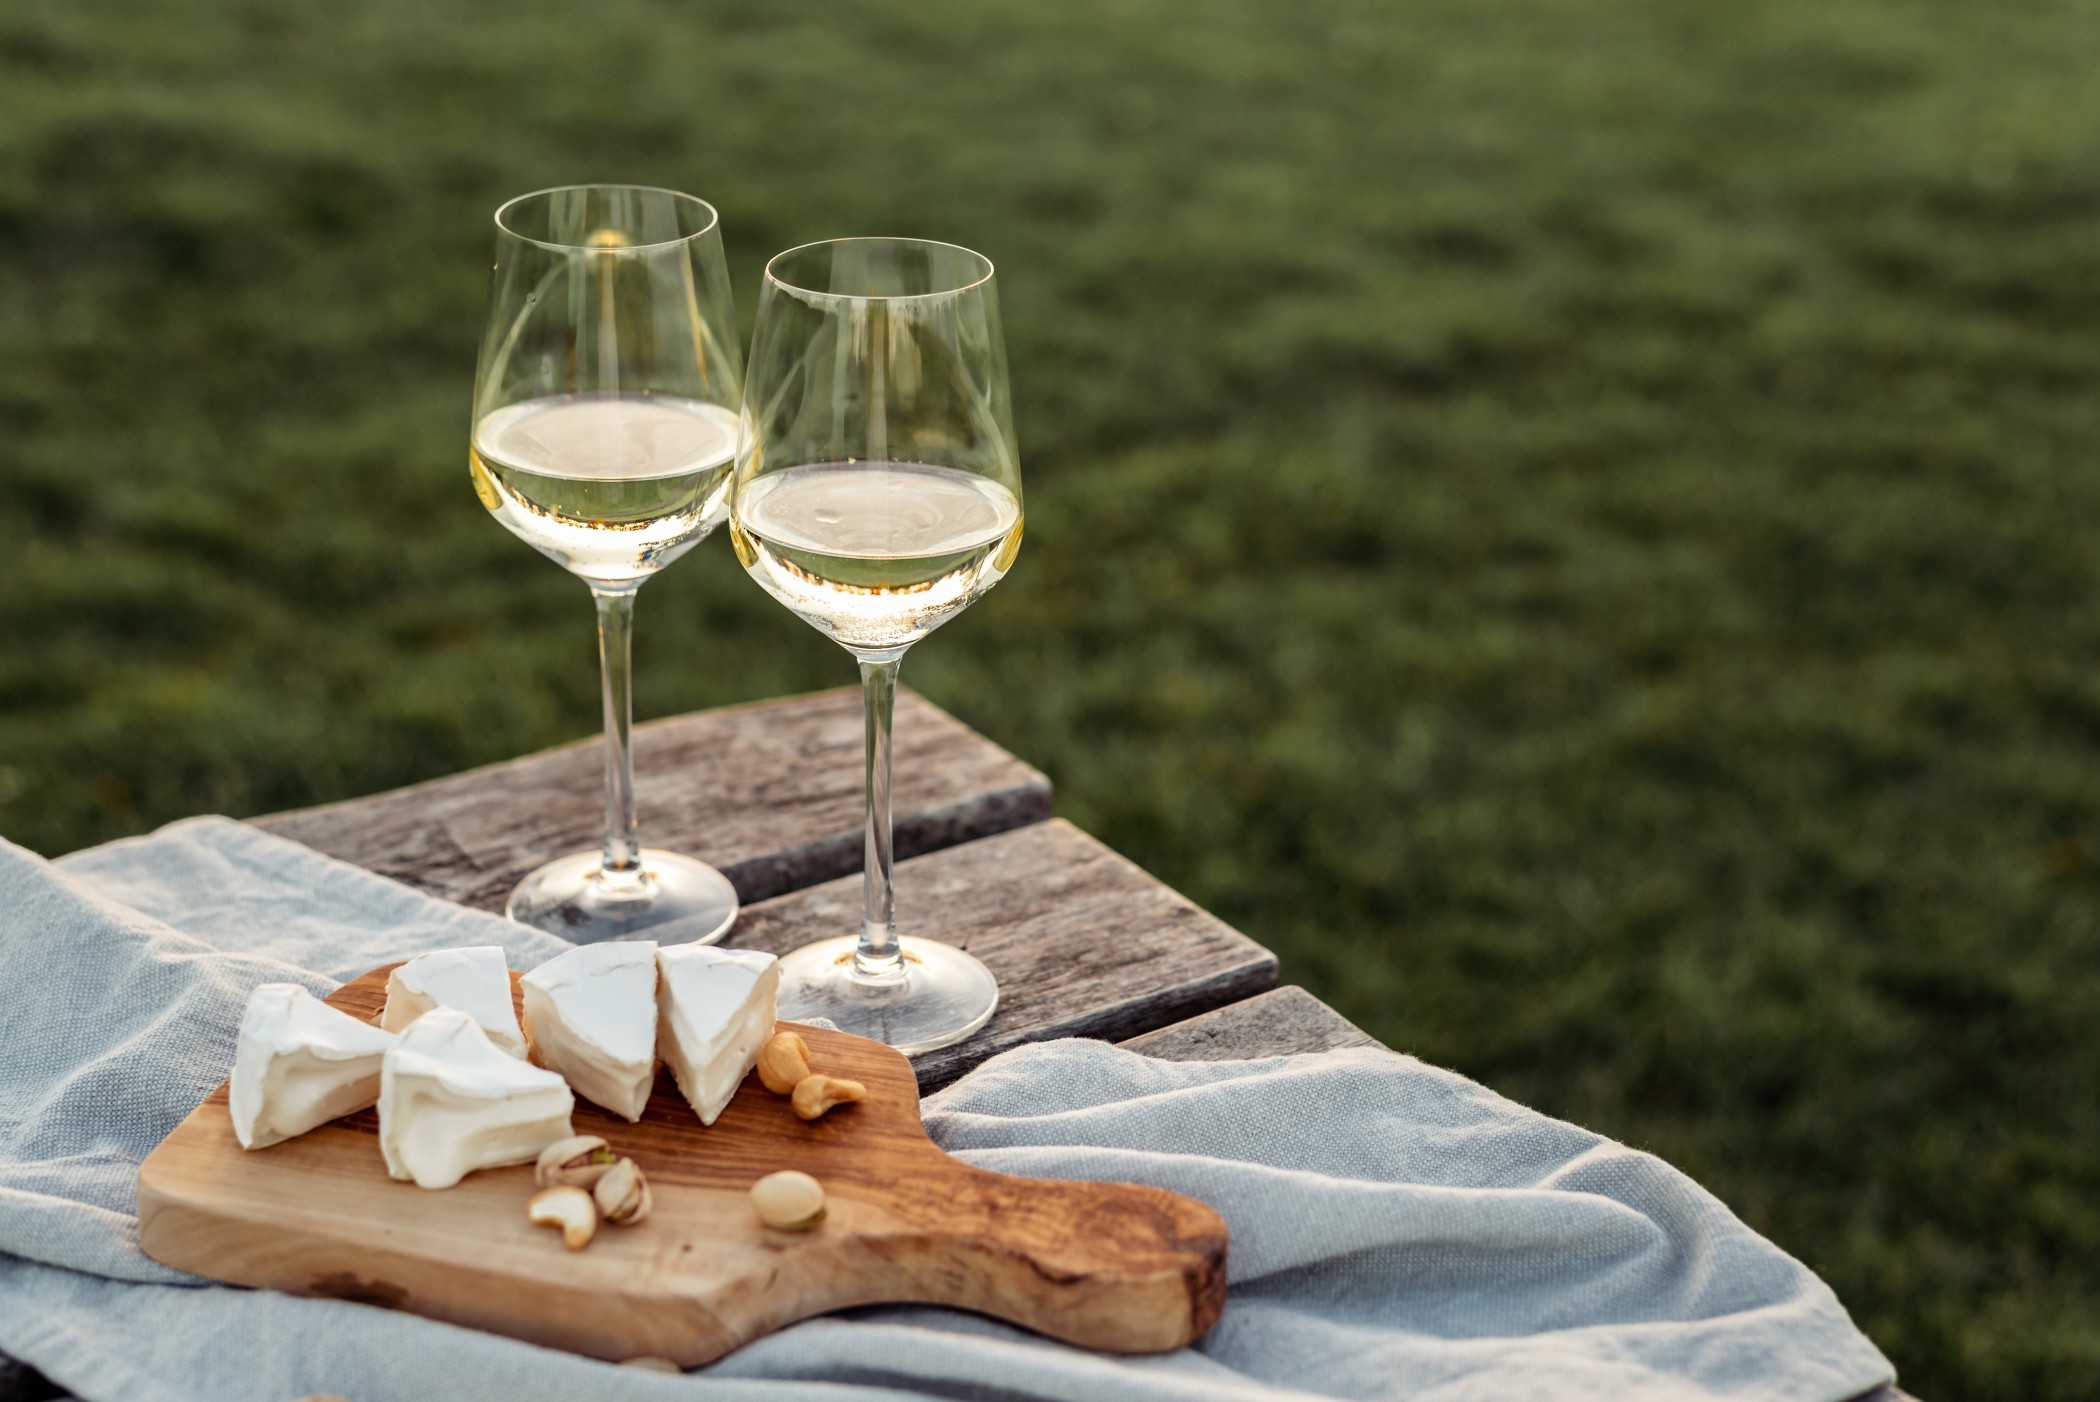 Käse, Nüsse und Cracker gehören zu einer guten Weinprobe. Foto: zolotko via Twenty20